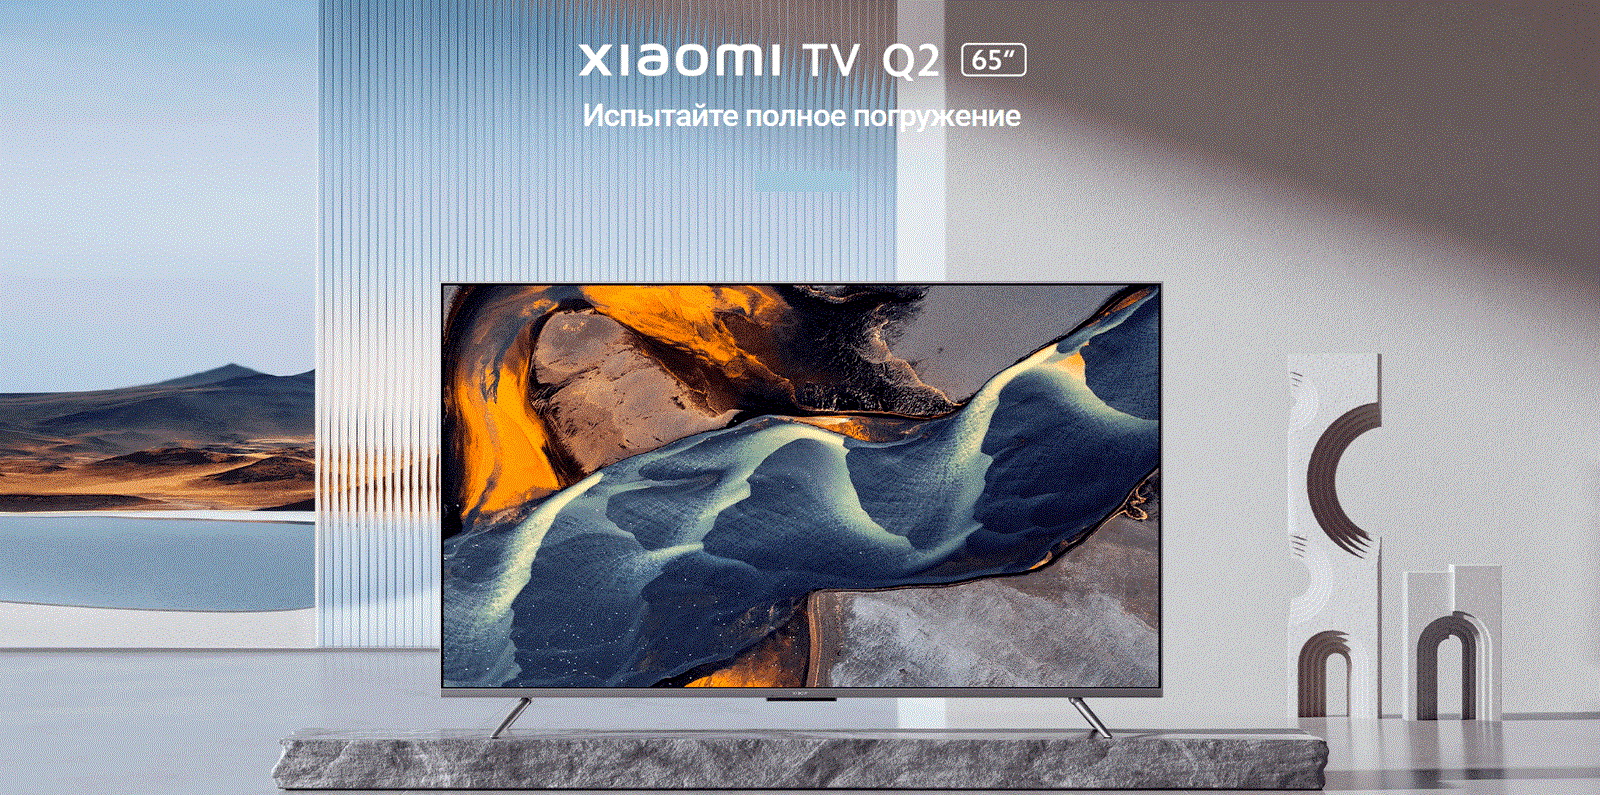 Телевизор Xiaomi Mi LED TV Q2